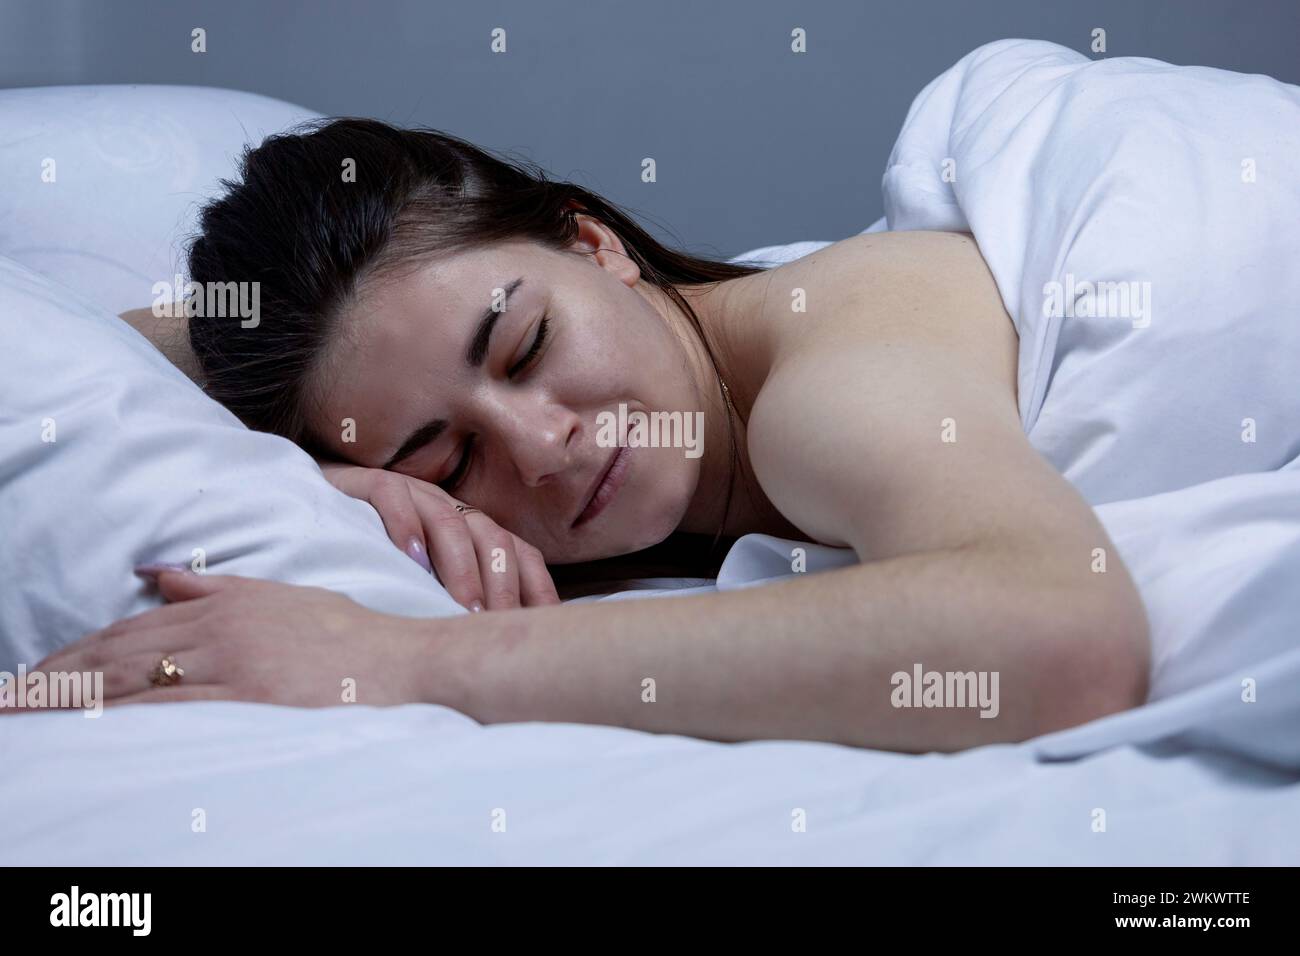 La ragazza dorme in un letto bianco Foto Stock